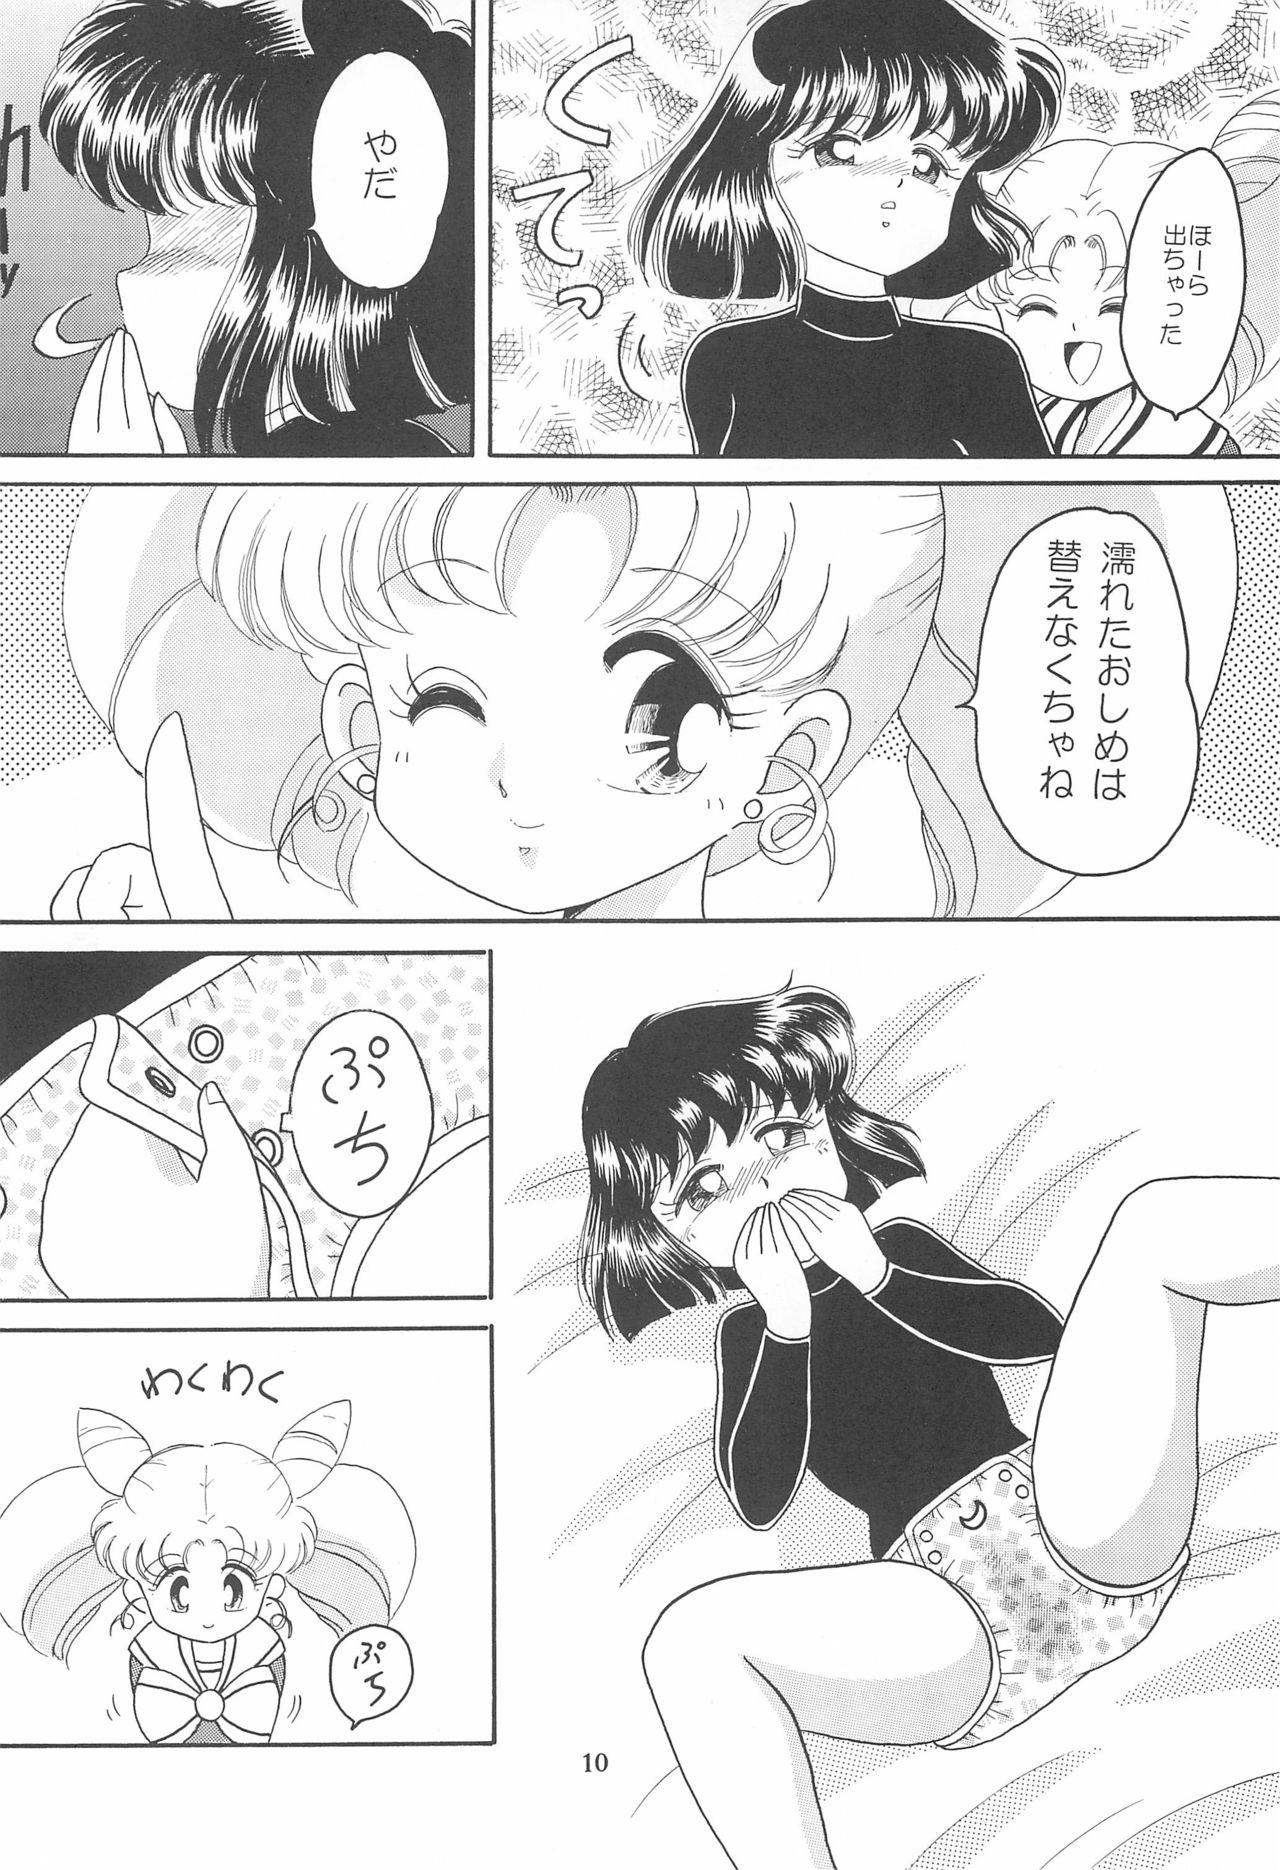 Oil Ponponpon 6 - Sailor moon | bishoujo senshi sailor moon Huge - Page 12